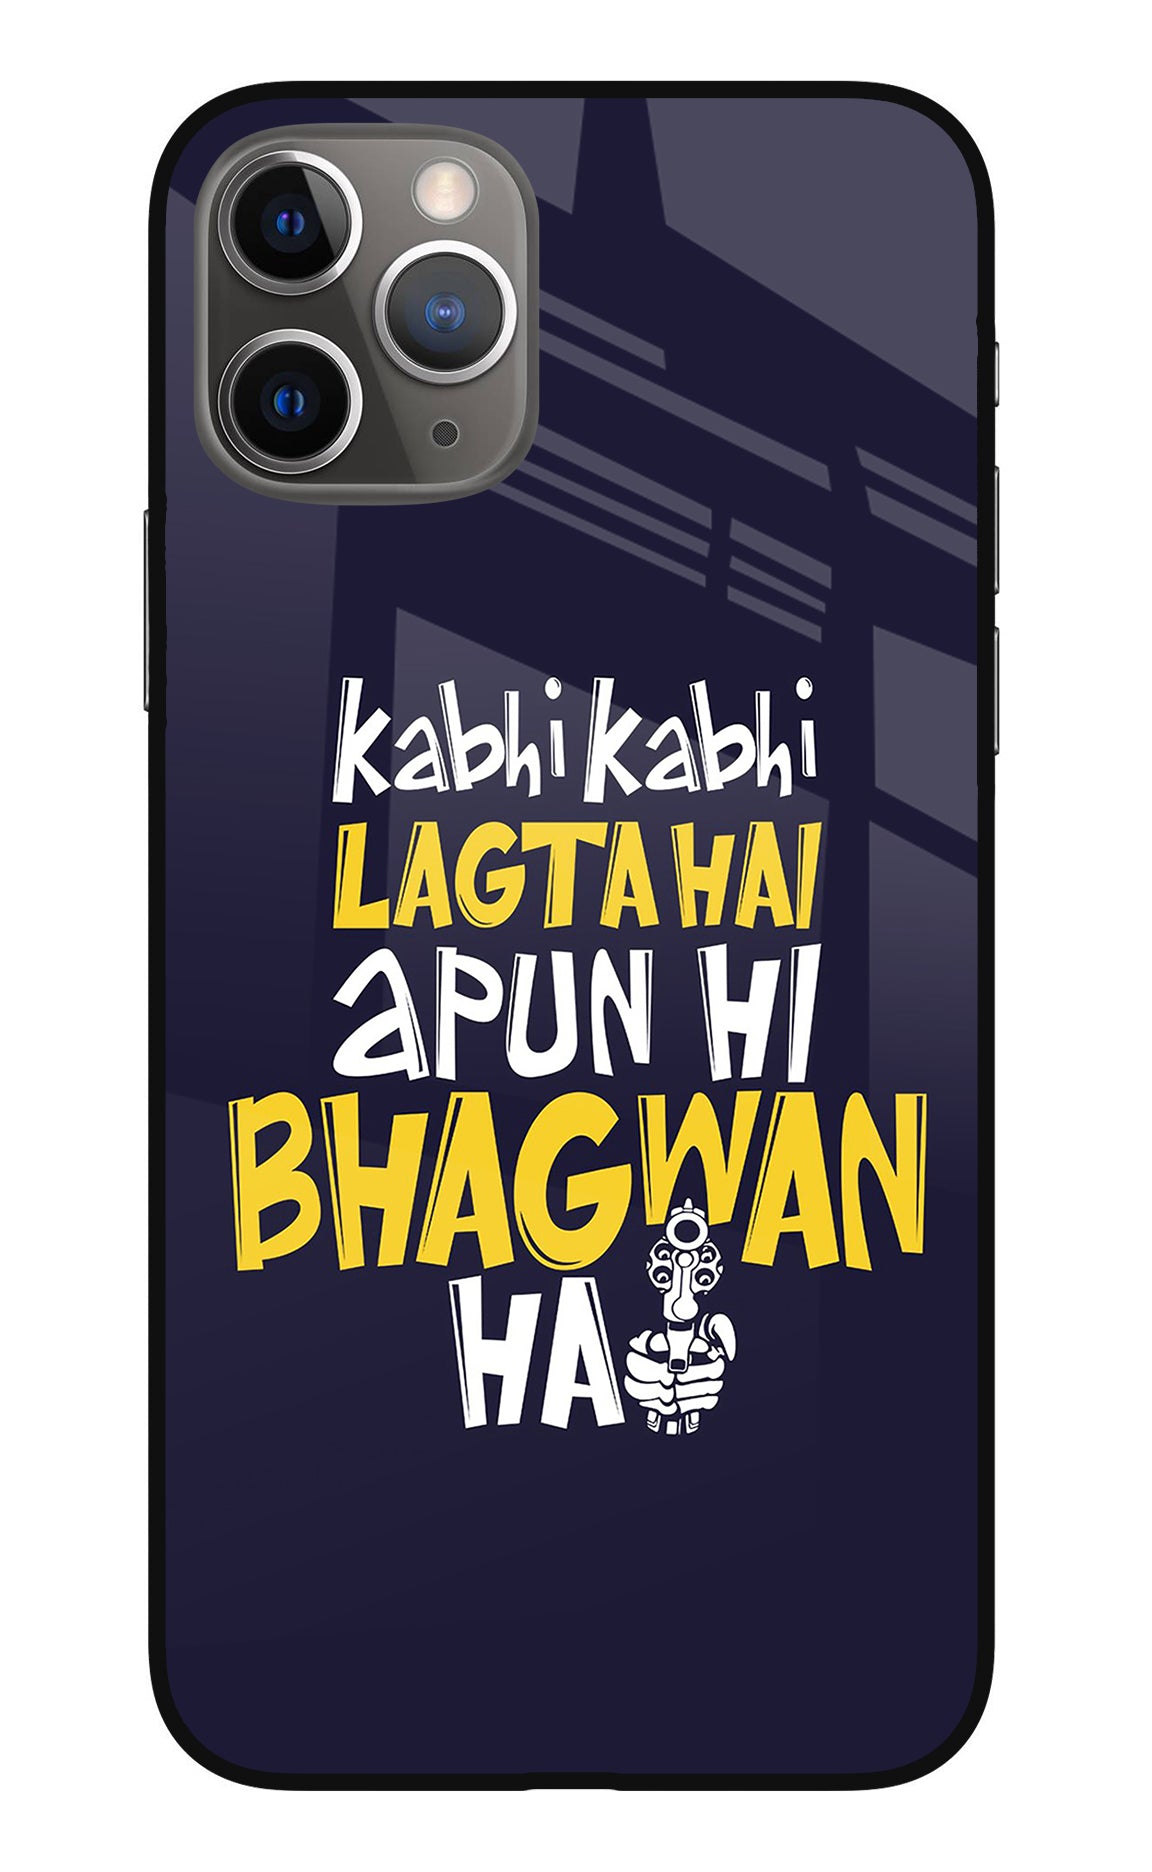 Kabhi Kabhi Lagta Hai Apun Hi Bhagwan Hai iPhone 11 Pro Max Back Cover